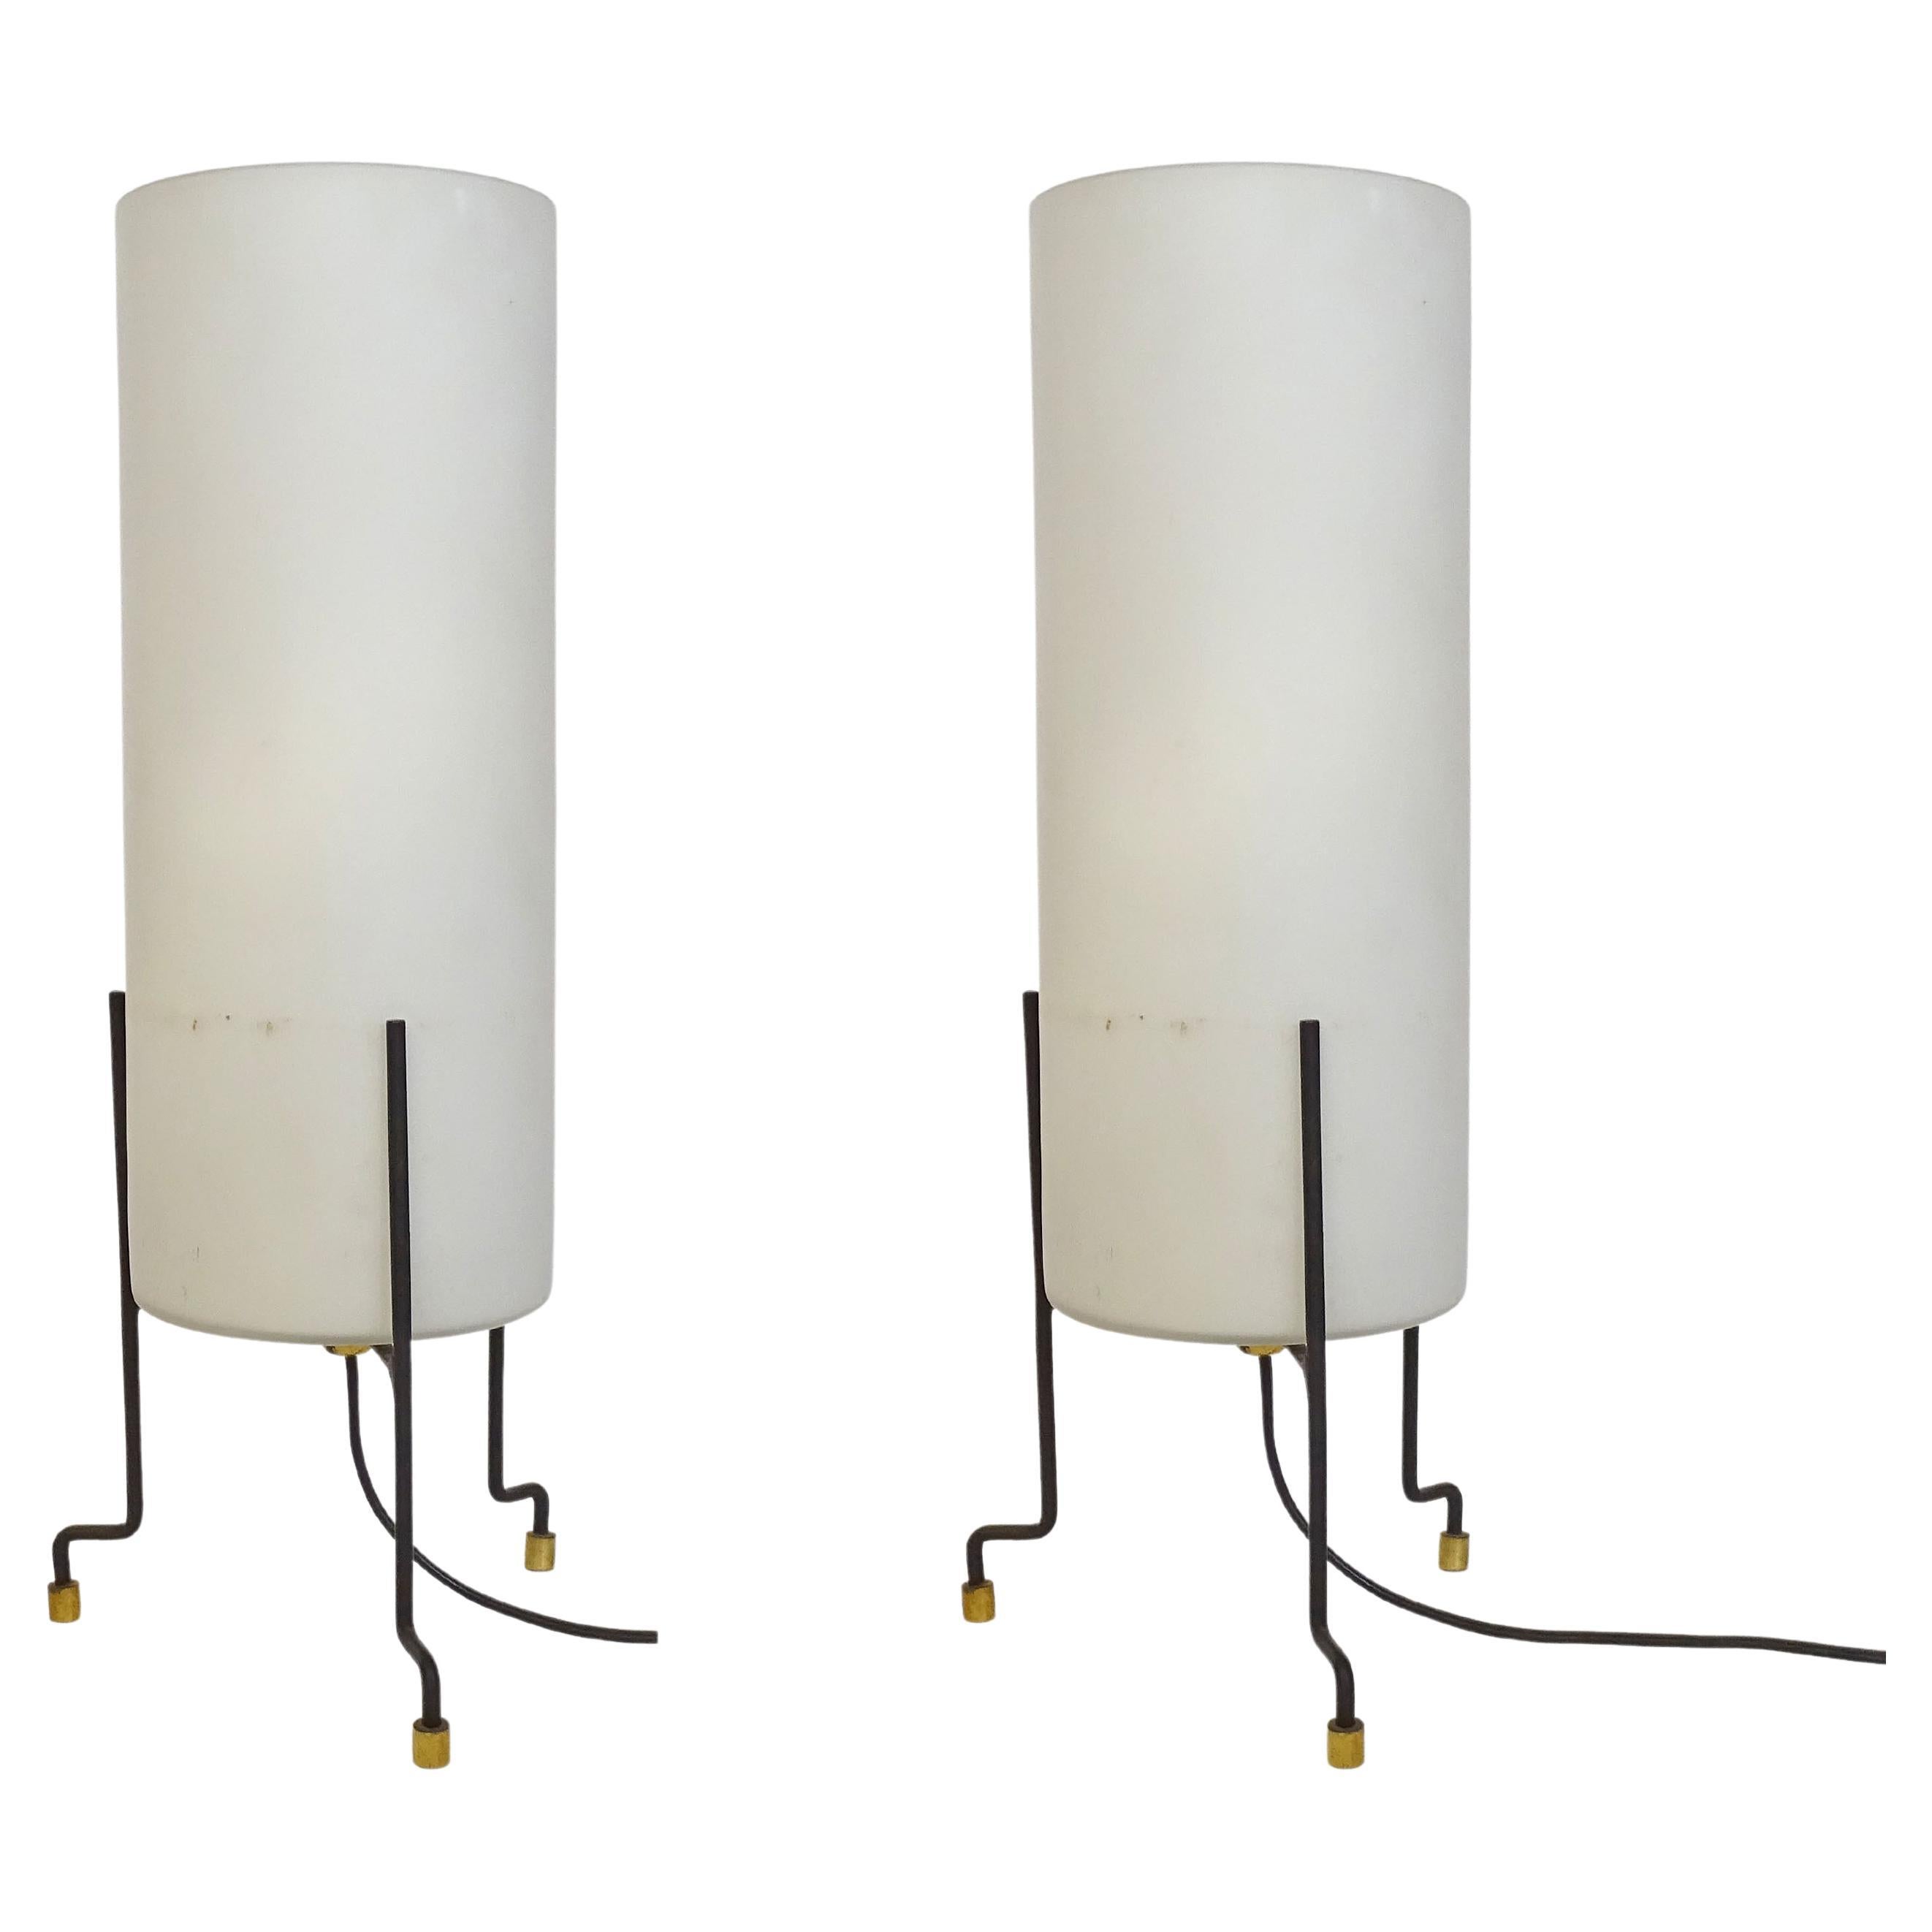 Splendide paire de lampes de table minimalistes italiennes des années 1950.